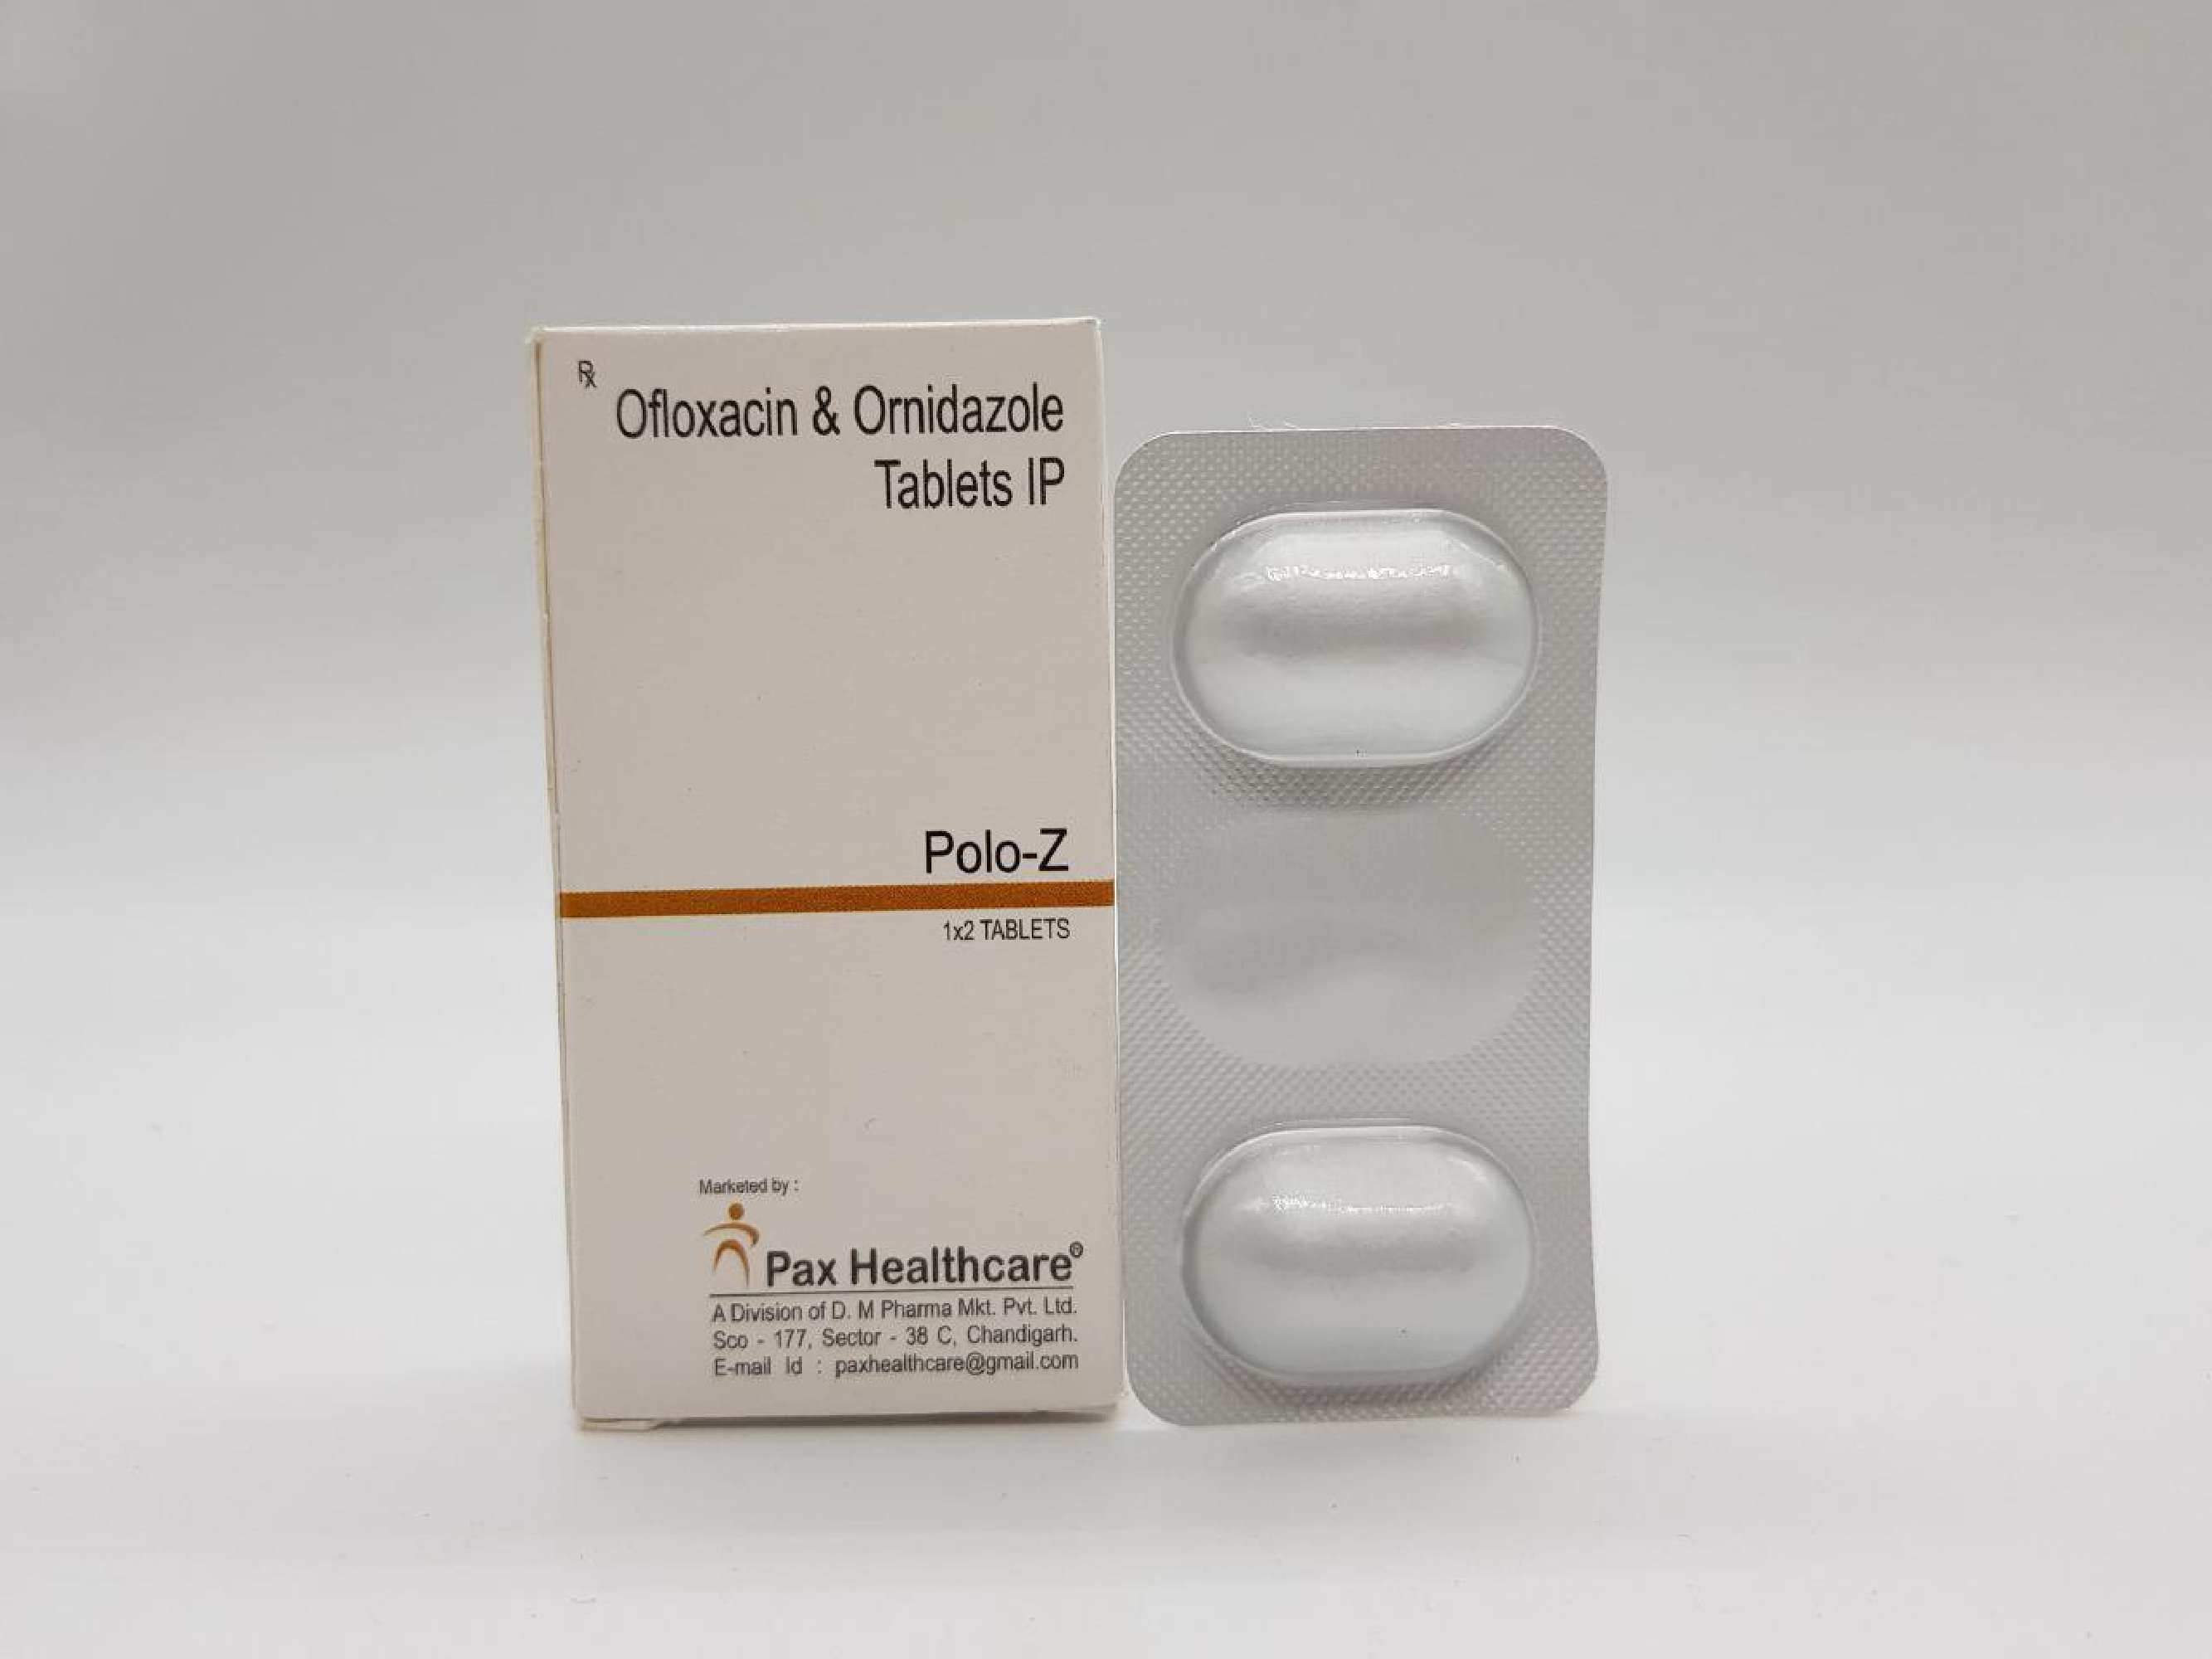 ofloxacin 200 mg+ ornidazole 500 mg